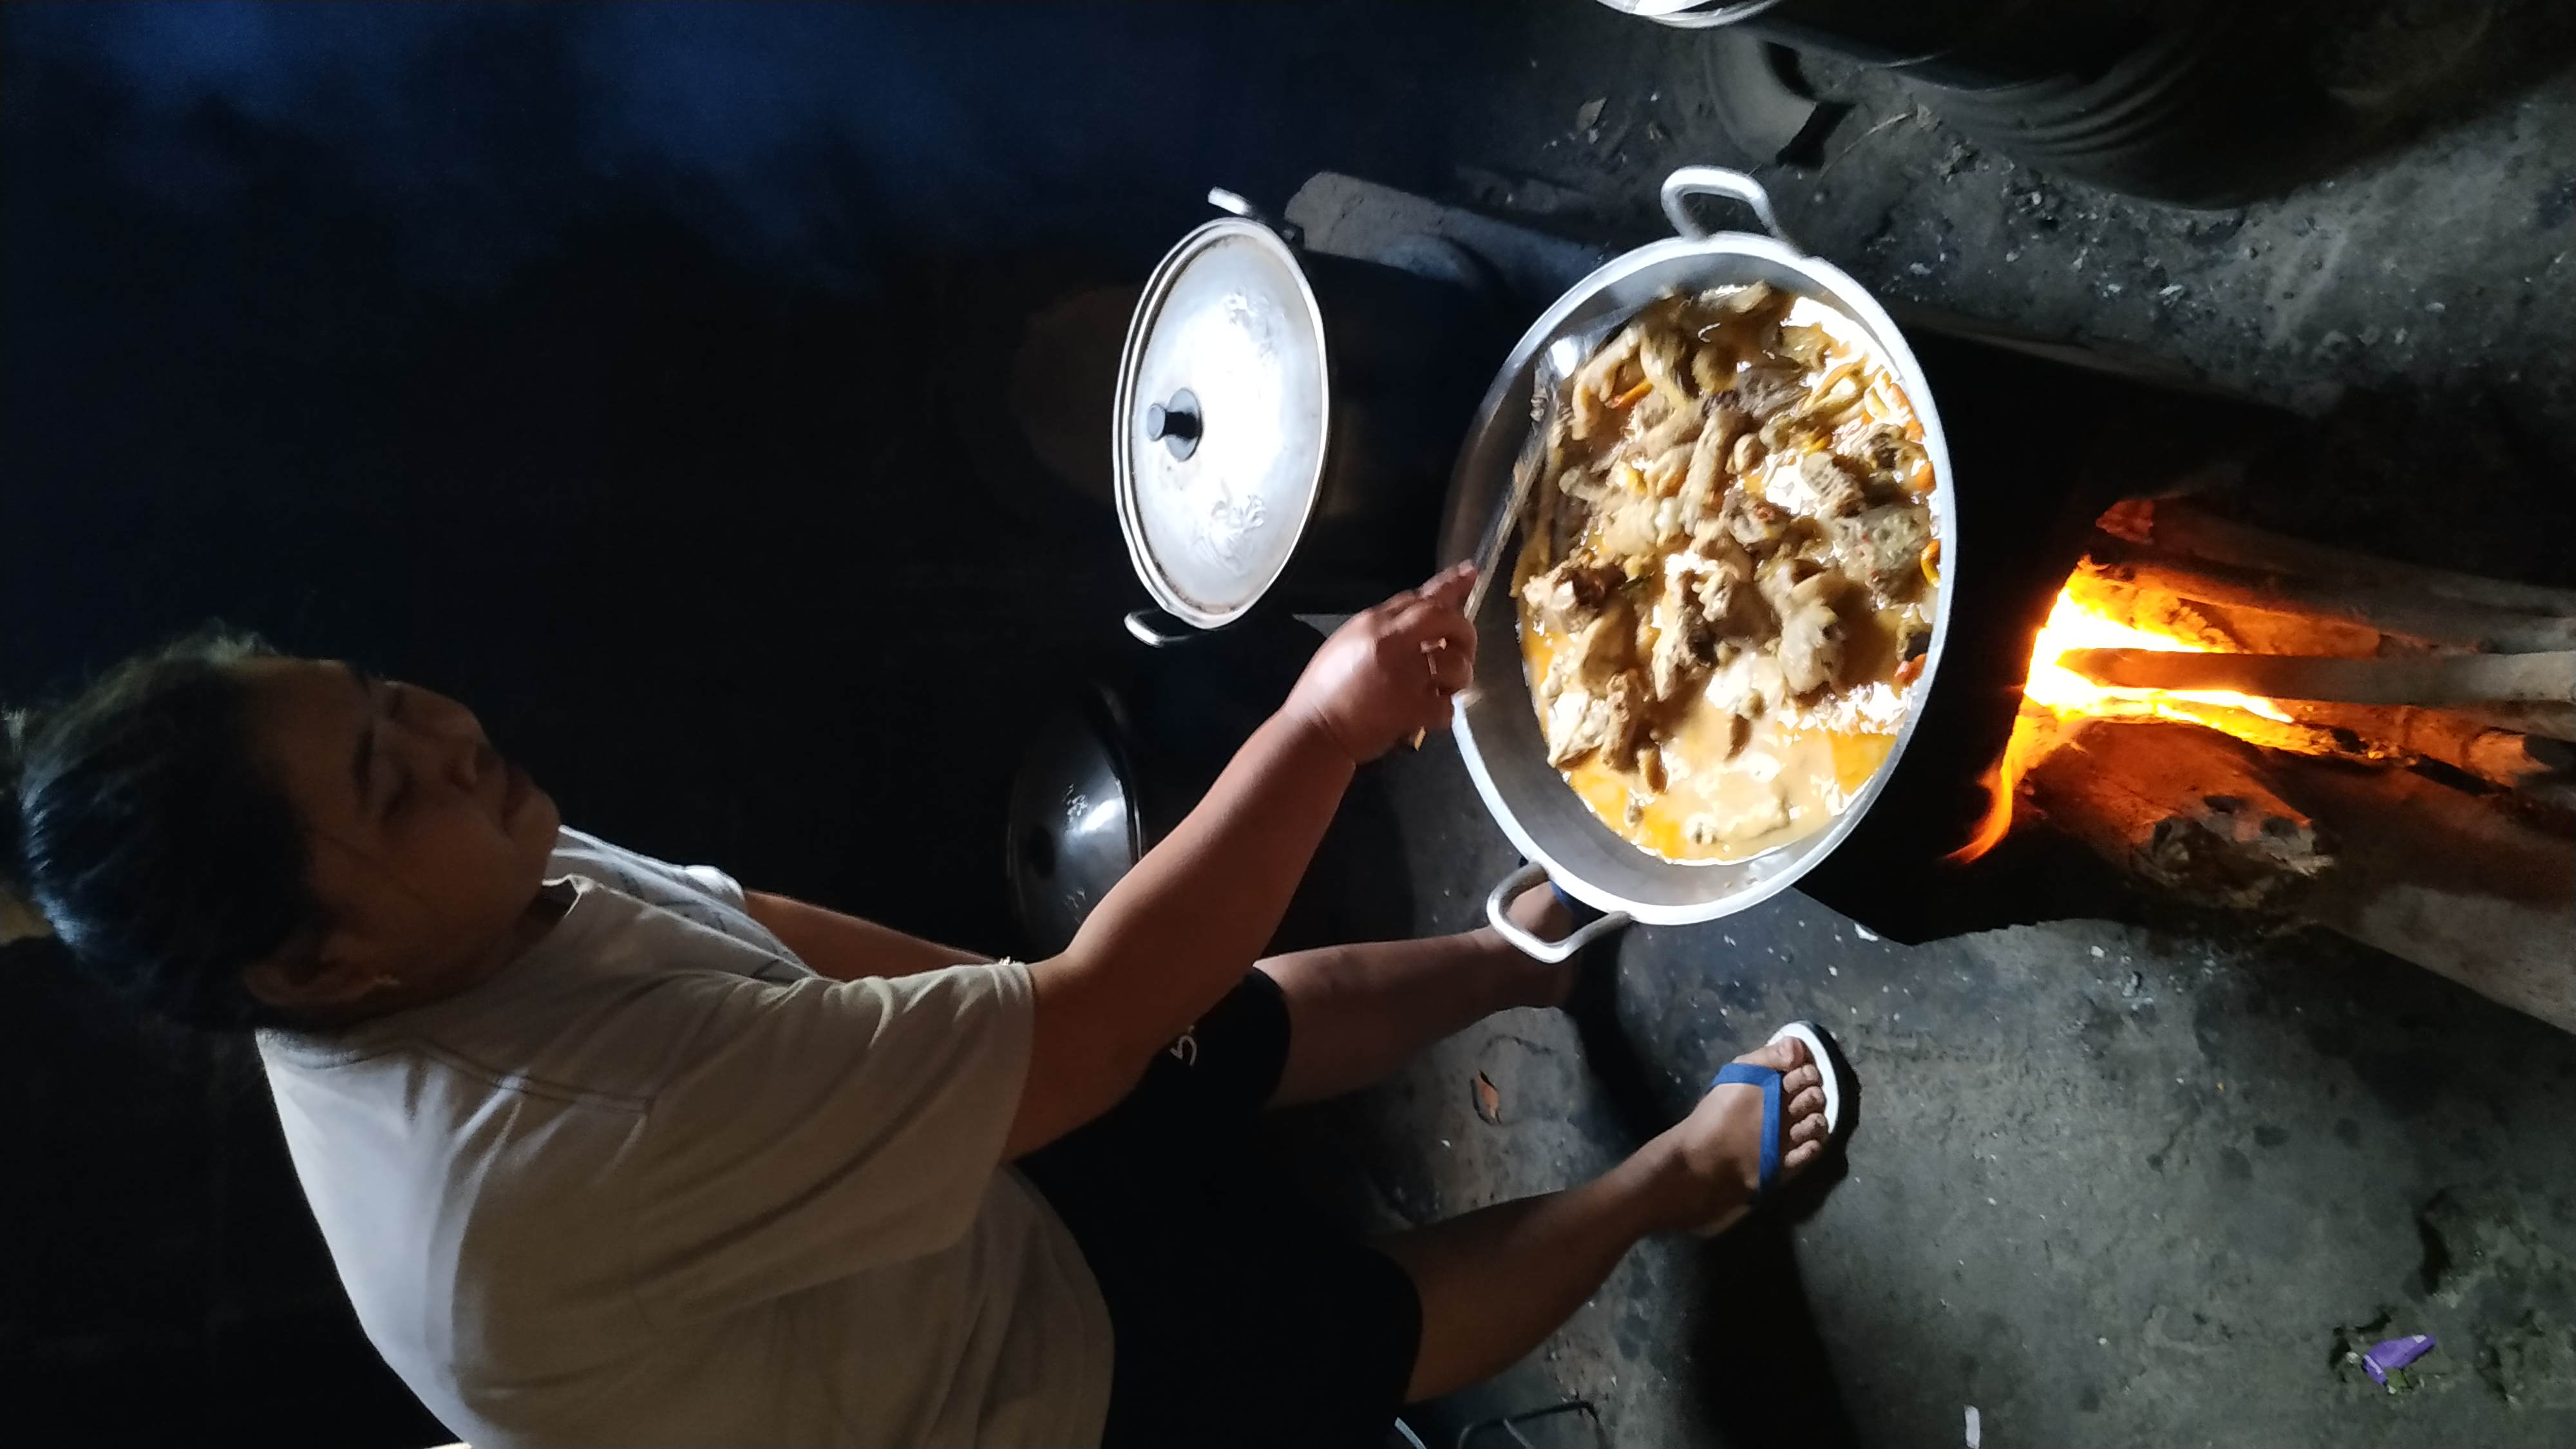 Ayam Lodho Bapake masih memakai cara masak tradisional, menggunakan kayu bakar arang. (Foto: Fendi/ngopibareng.id)